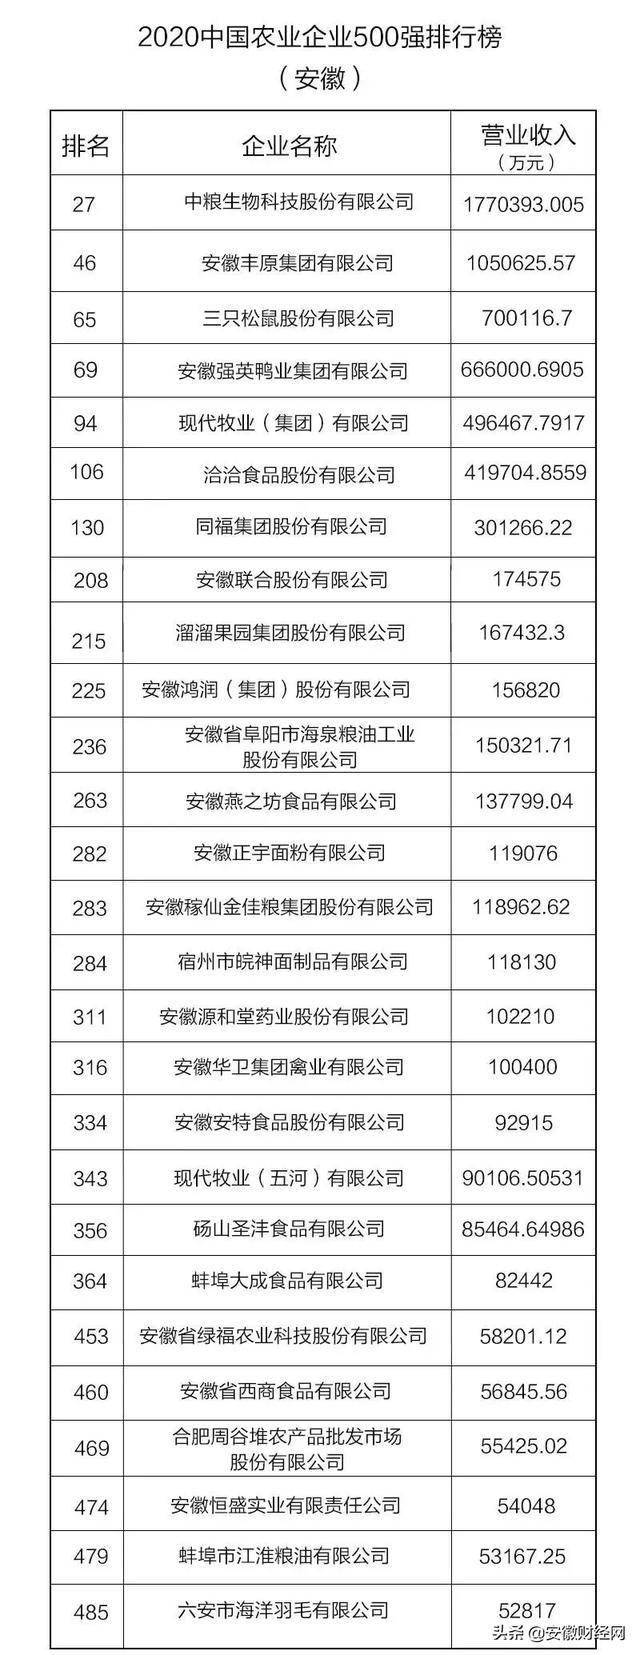 
中国农业企业500强公布 安徽27家企业入围-云开平台app官方